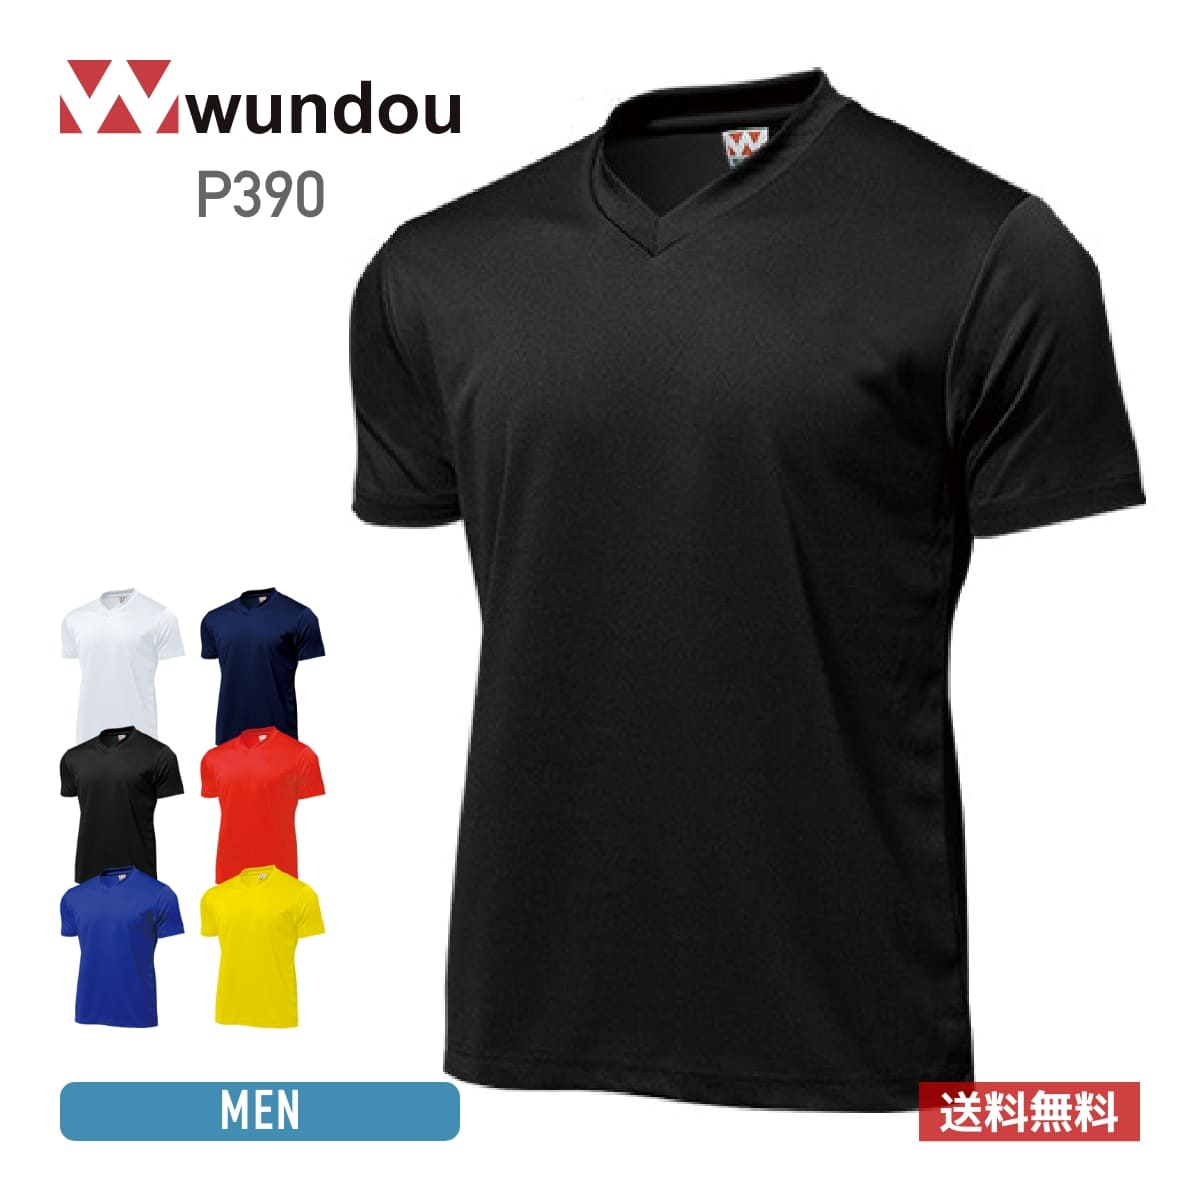 wundou(ウンドウ)激安通販 - Tshirt.stビジネス